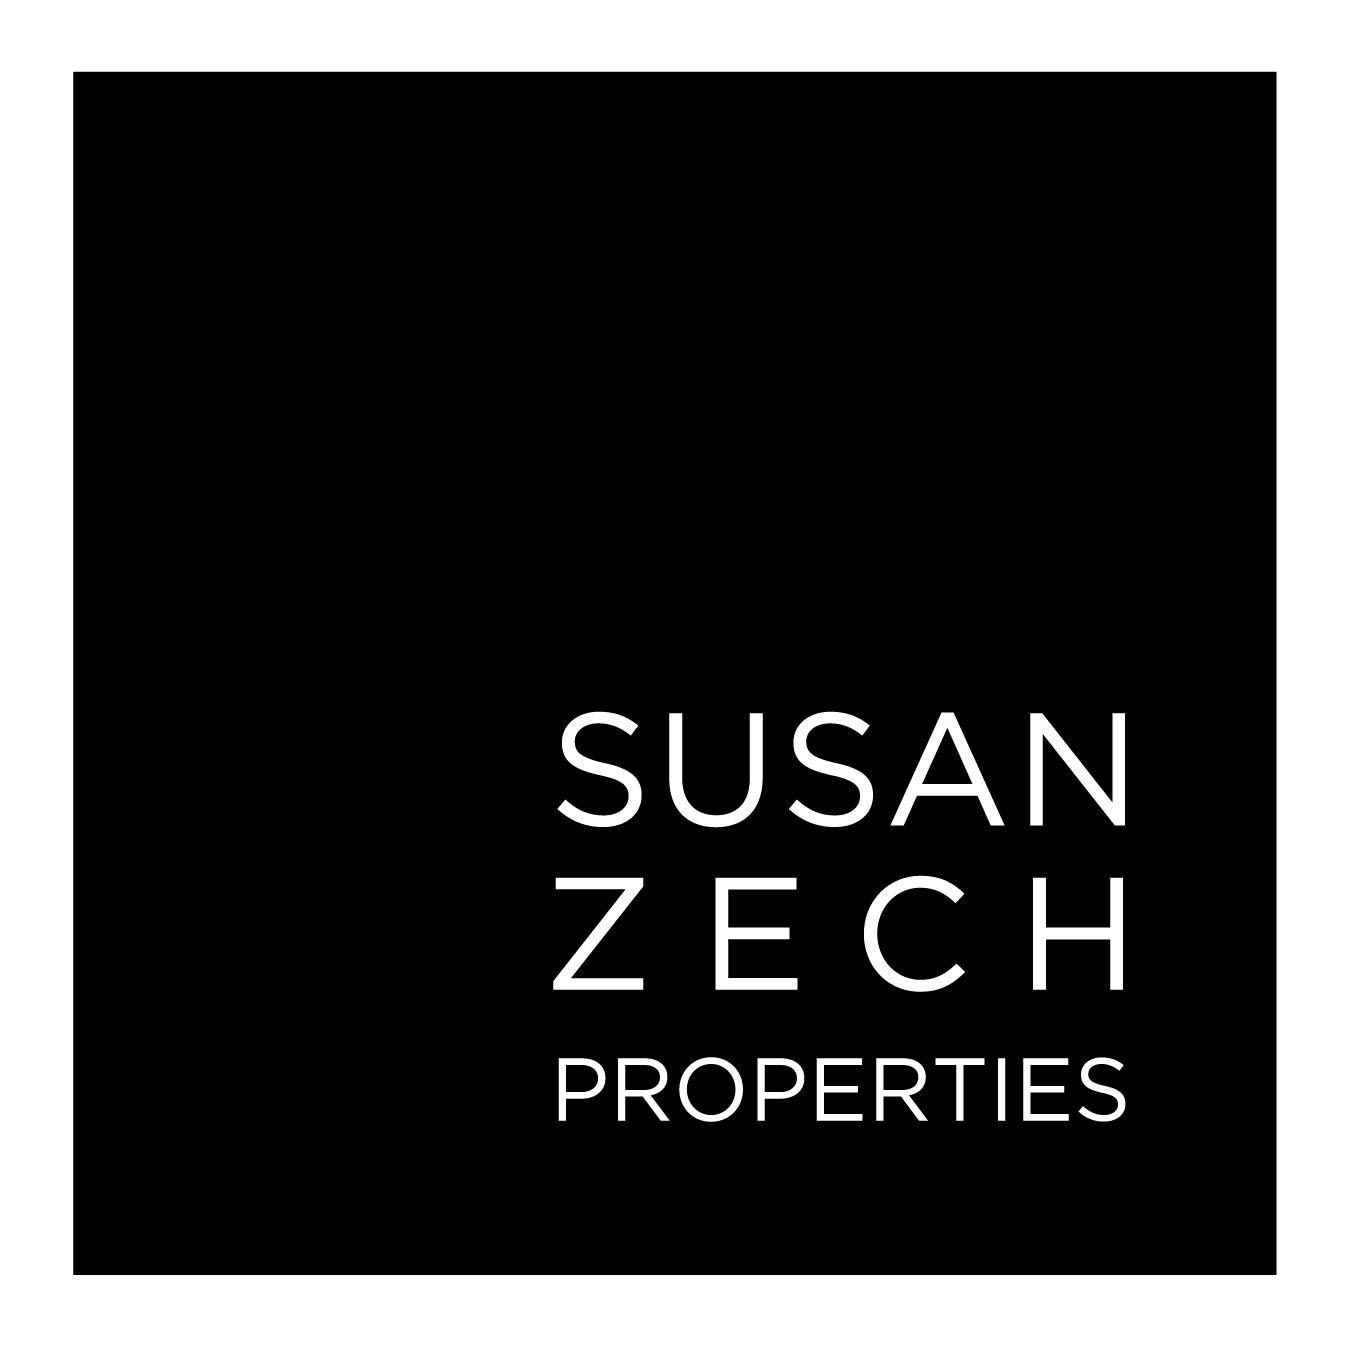 Susan Zech Properties FINAL logo copy